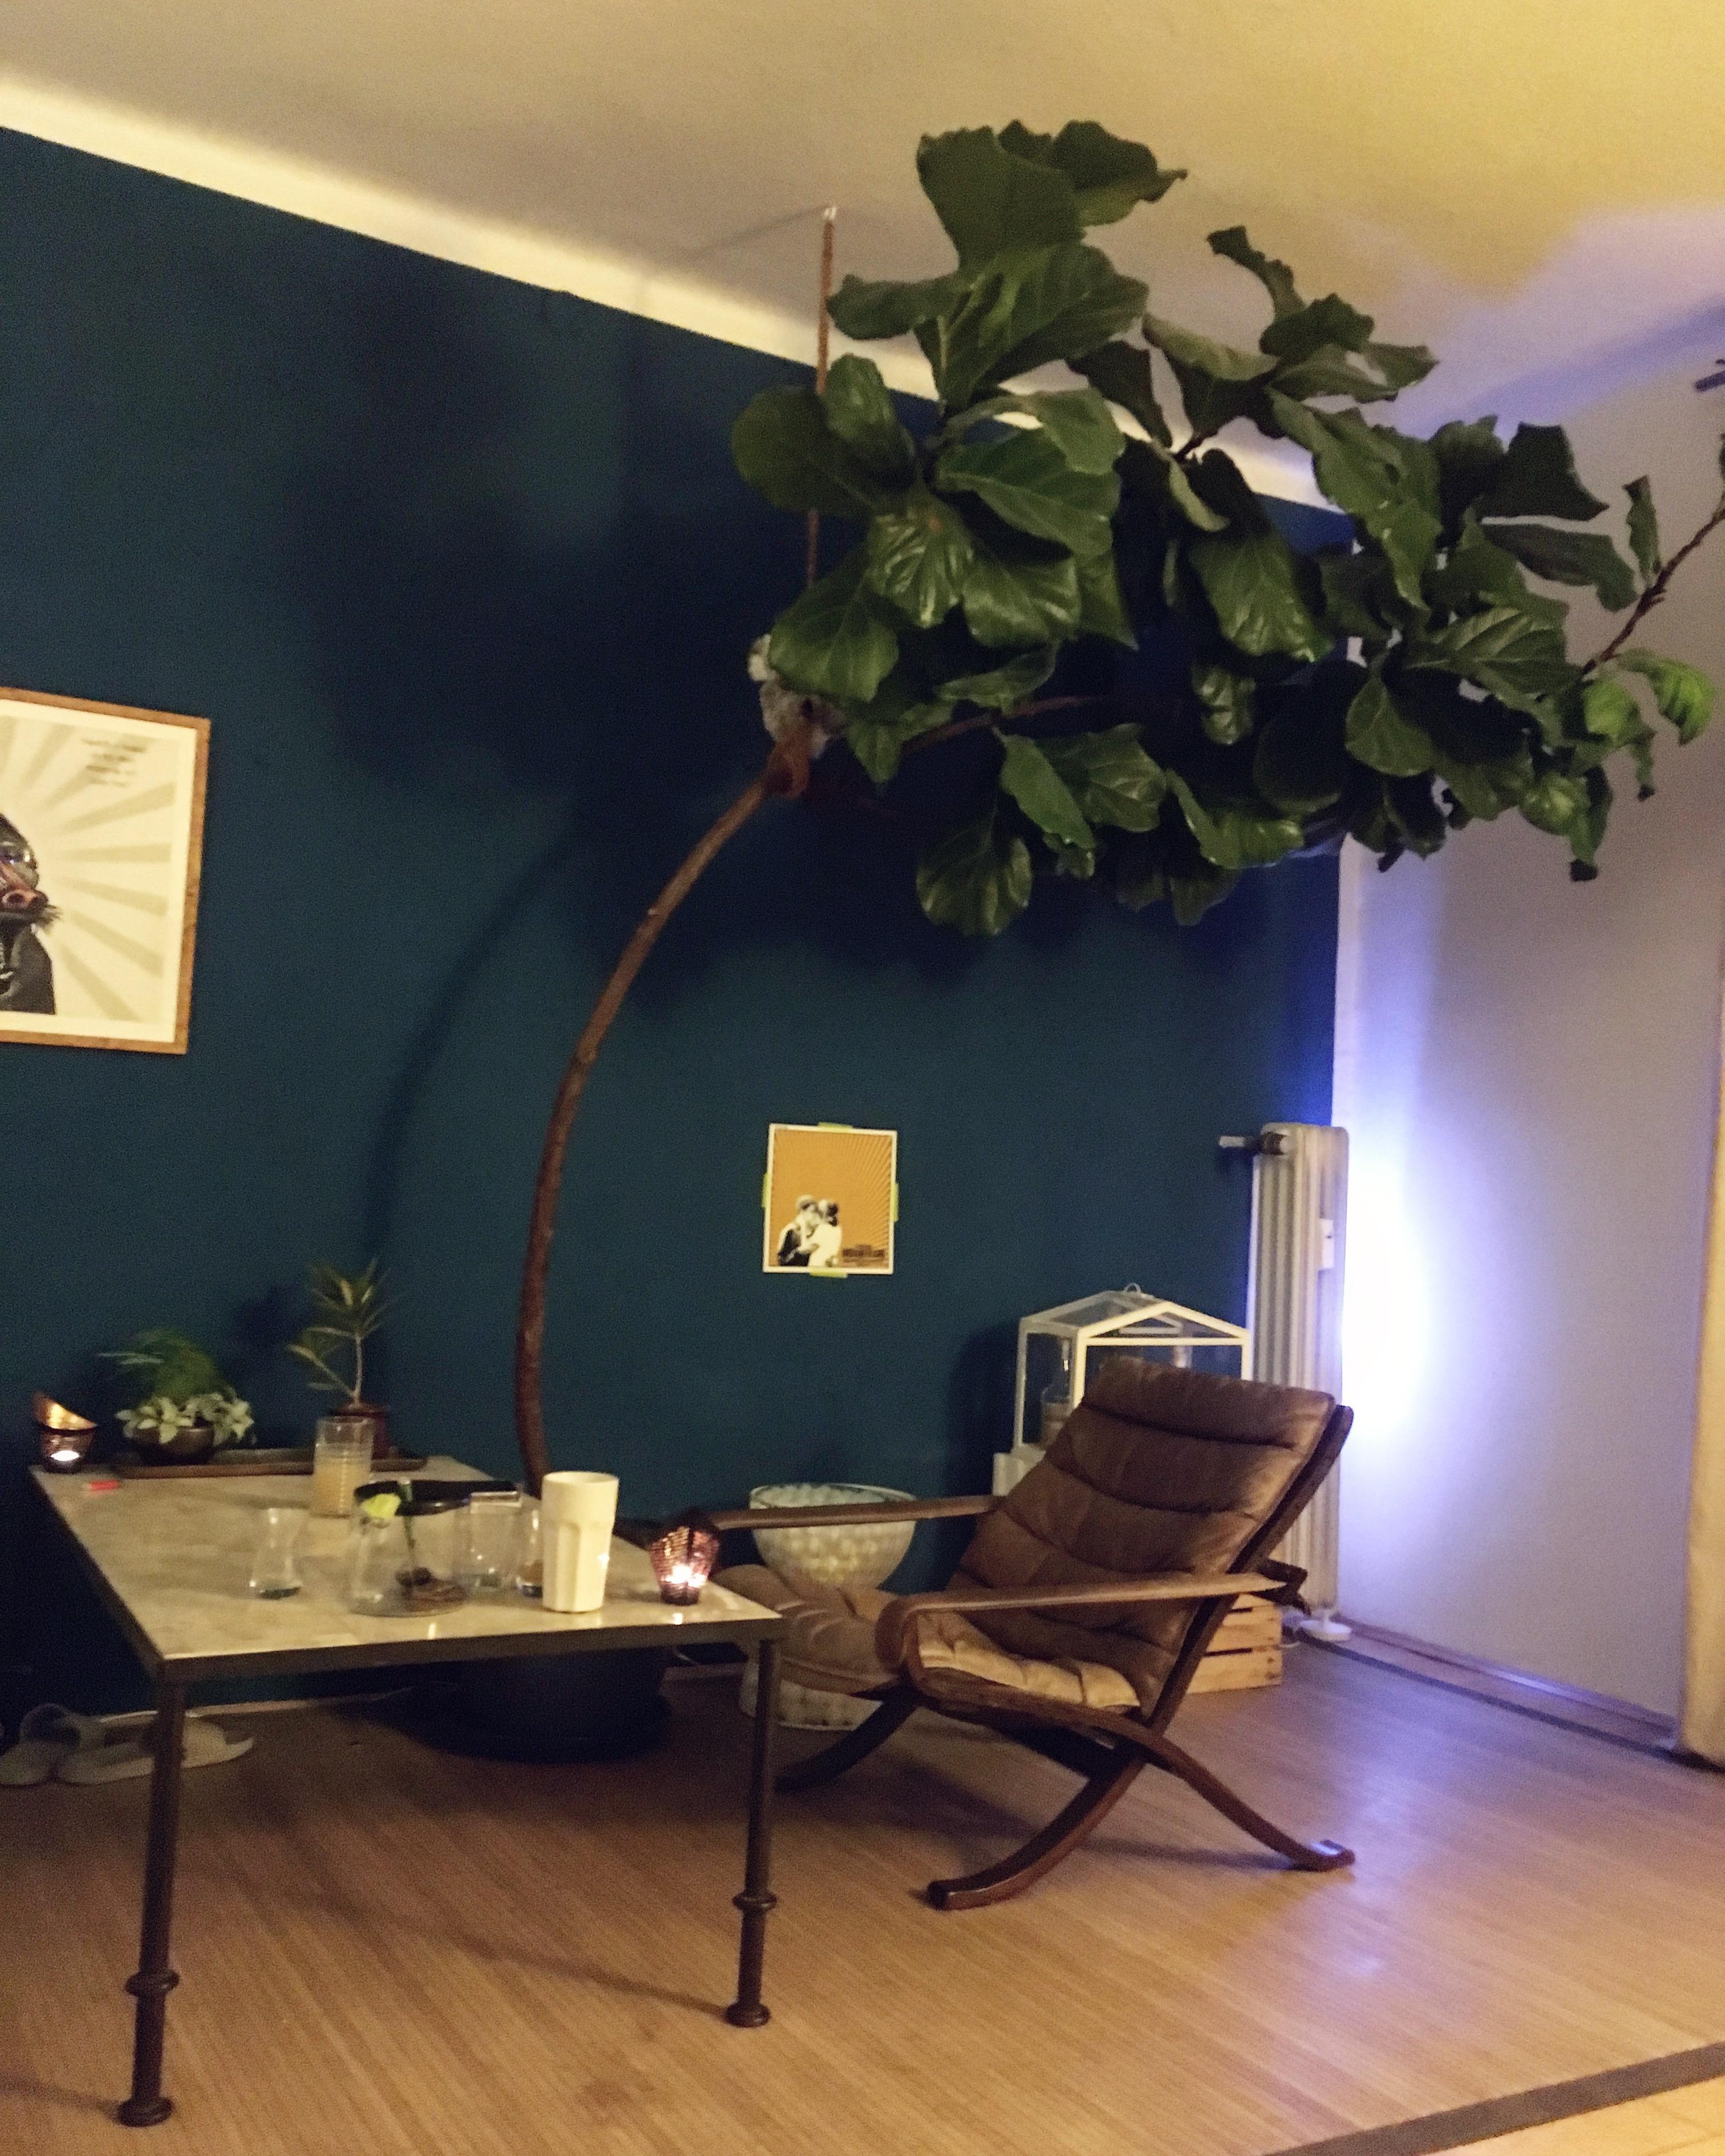 Türkischen Tee, marokkanischer Feigenbaum und gute Beats #samstagabend #feigenbaum #pflanze #blau #wohnzimmer